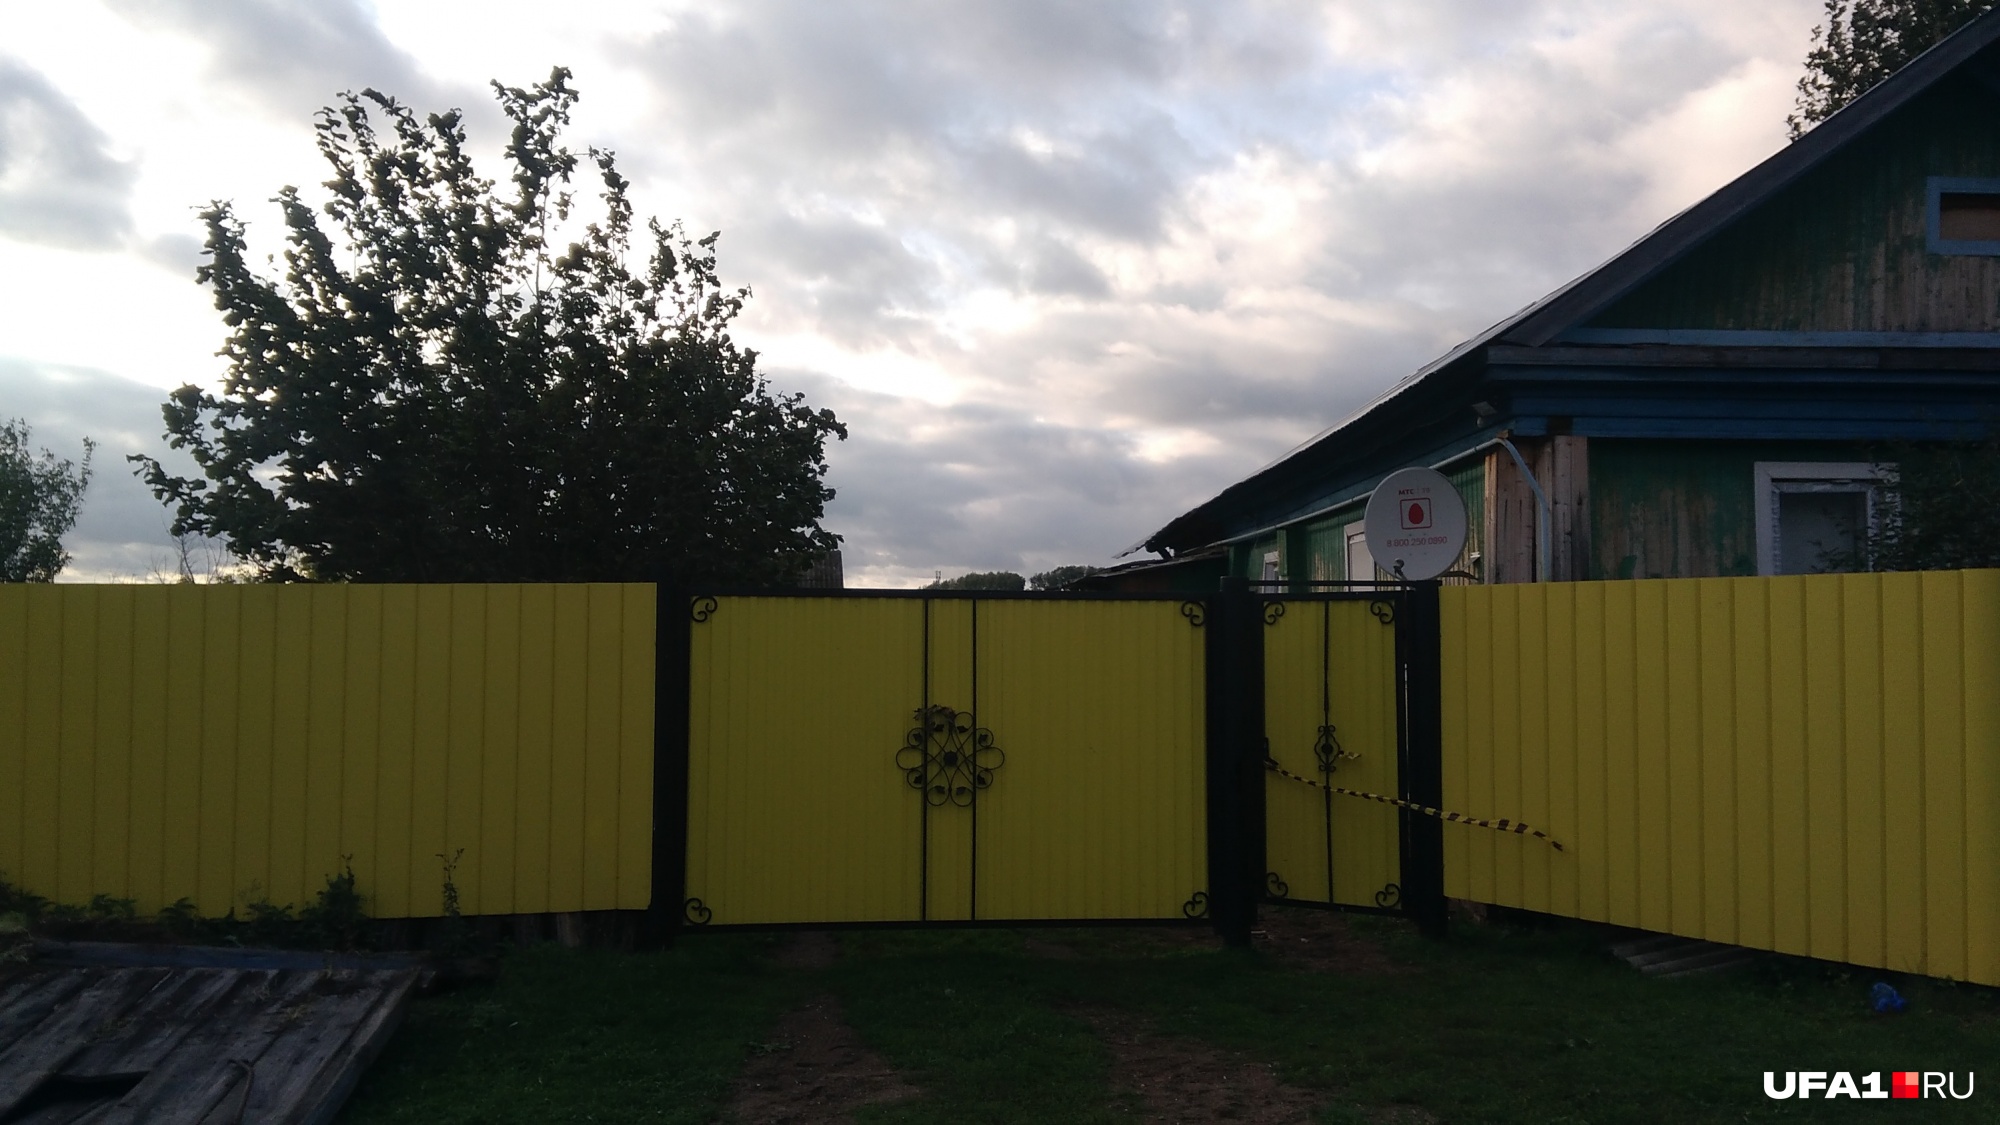 Дом, из которого якобы пропал ребенок, забор жизнерадостного ярко-желтого цвета